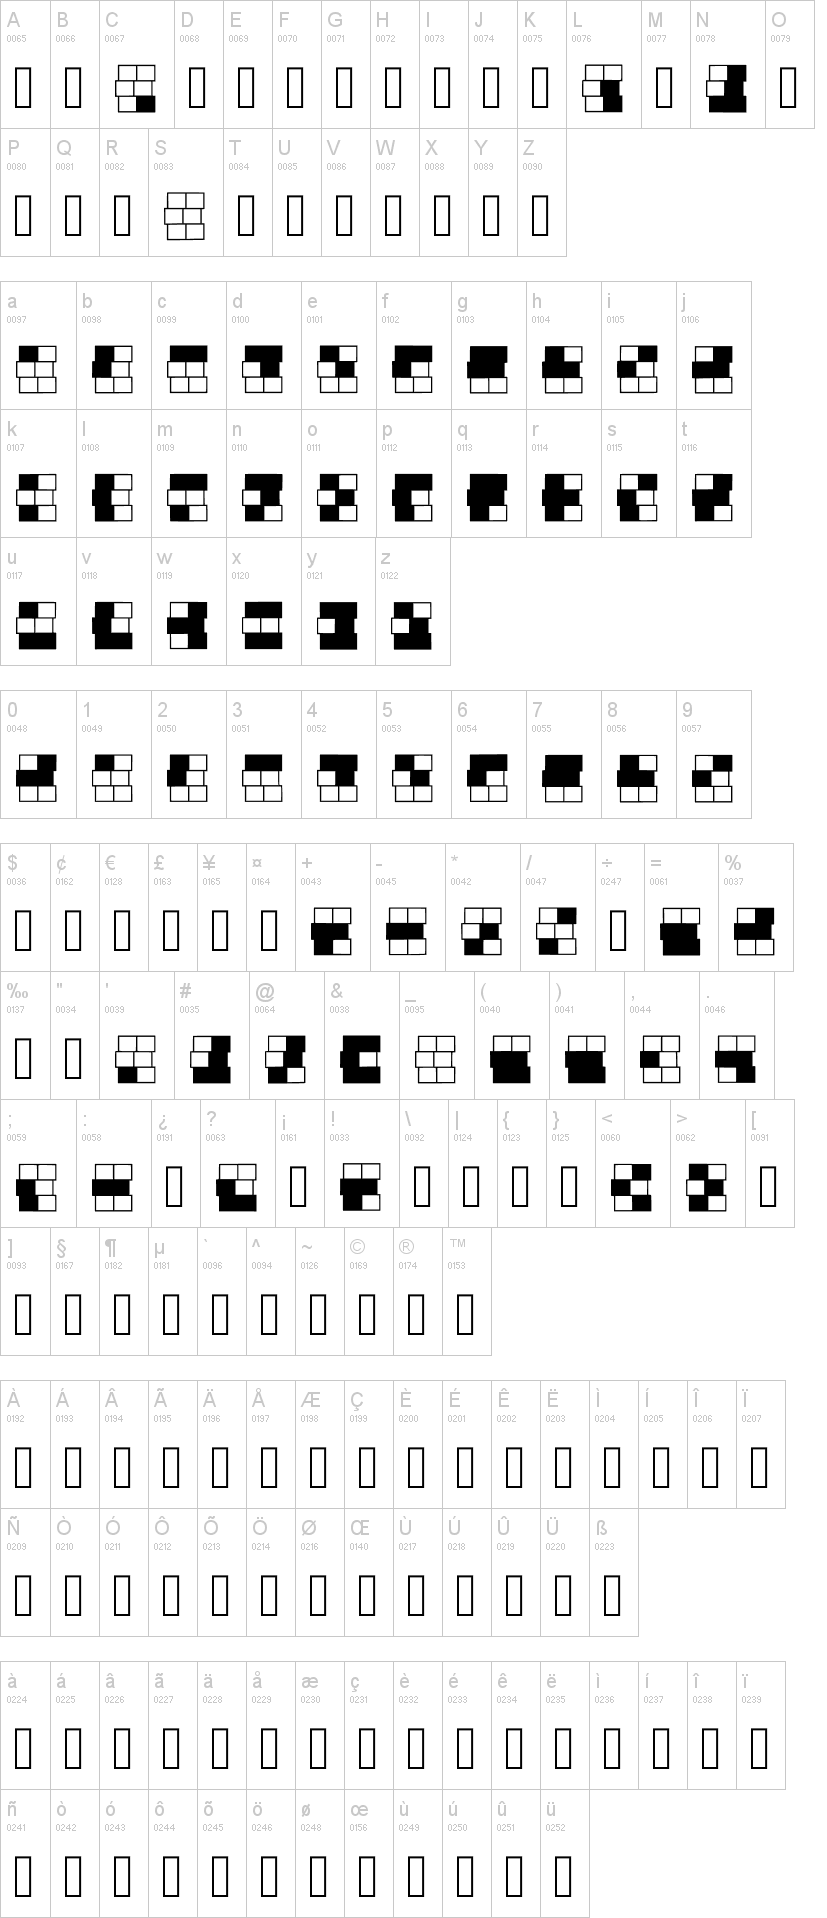 Braille Grid